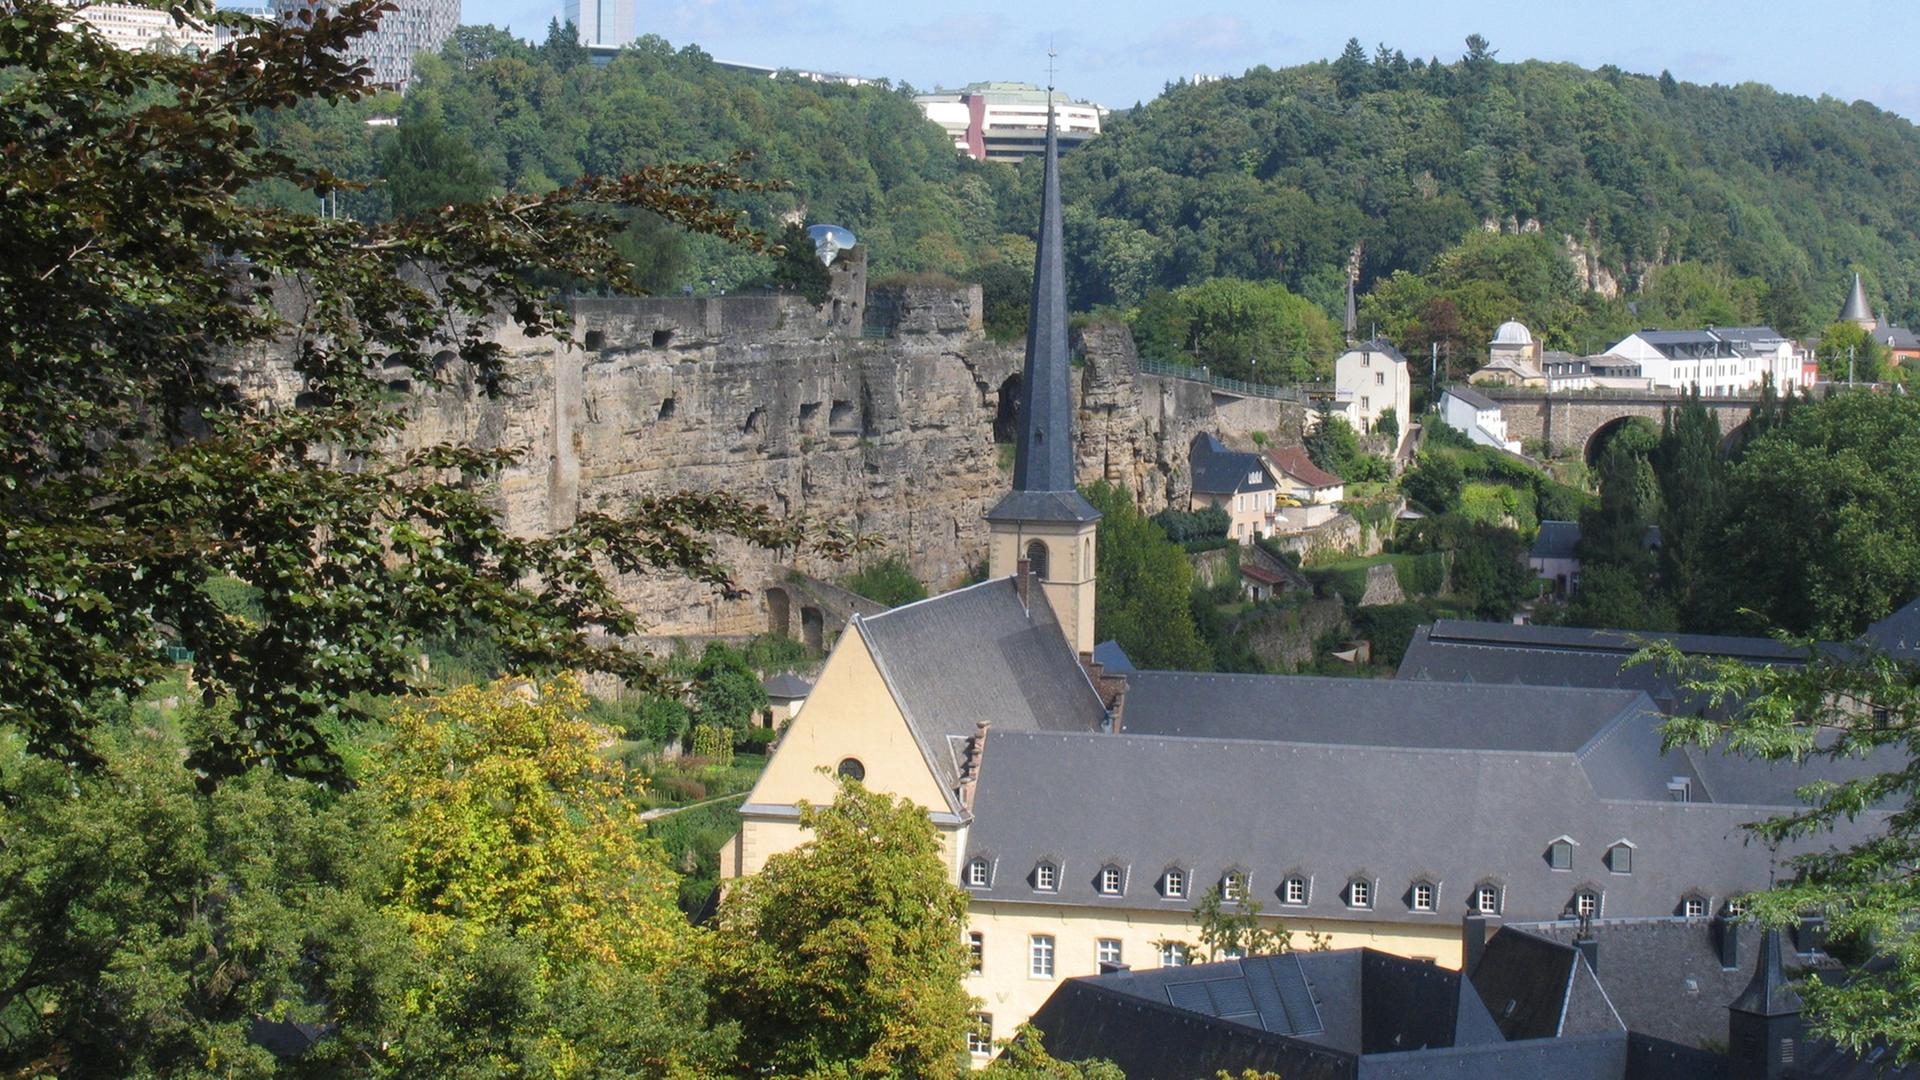 Die Burg Lucilinburhuc befindet sich in einer Höhe von rund 282 m auf dem so genannten Bockfelsen, den Graf Siegfried 963 erwarb. Darunter die Teilansicht der Kasematten. Im Hintergrund der Kirchberg mit seiner Skyline. Die Burg wird in einer Urkunde erwähnt, welche den Tausch zwischen dem Ardennergraf Siegfried und dem Kloster St. Maximin in Trier aus dem Jahre 963 dokumentiert. Aus dem Besitz des Klosters erhält der Graf den Bockfelsen gegen Ländereien in Feulen.